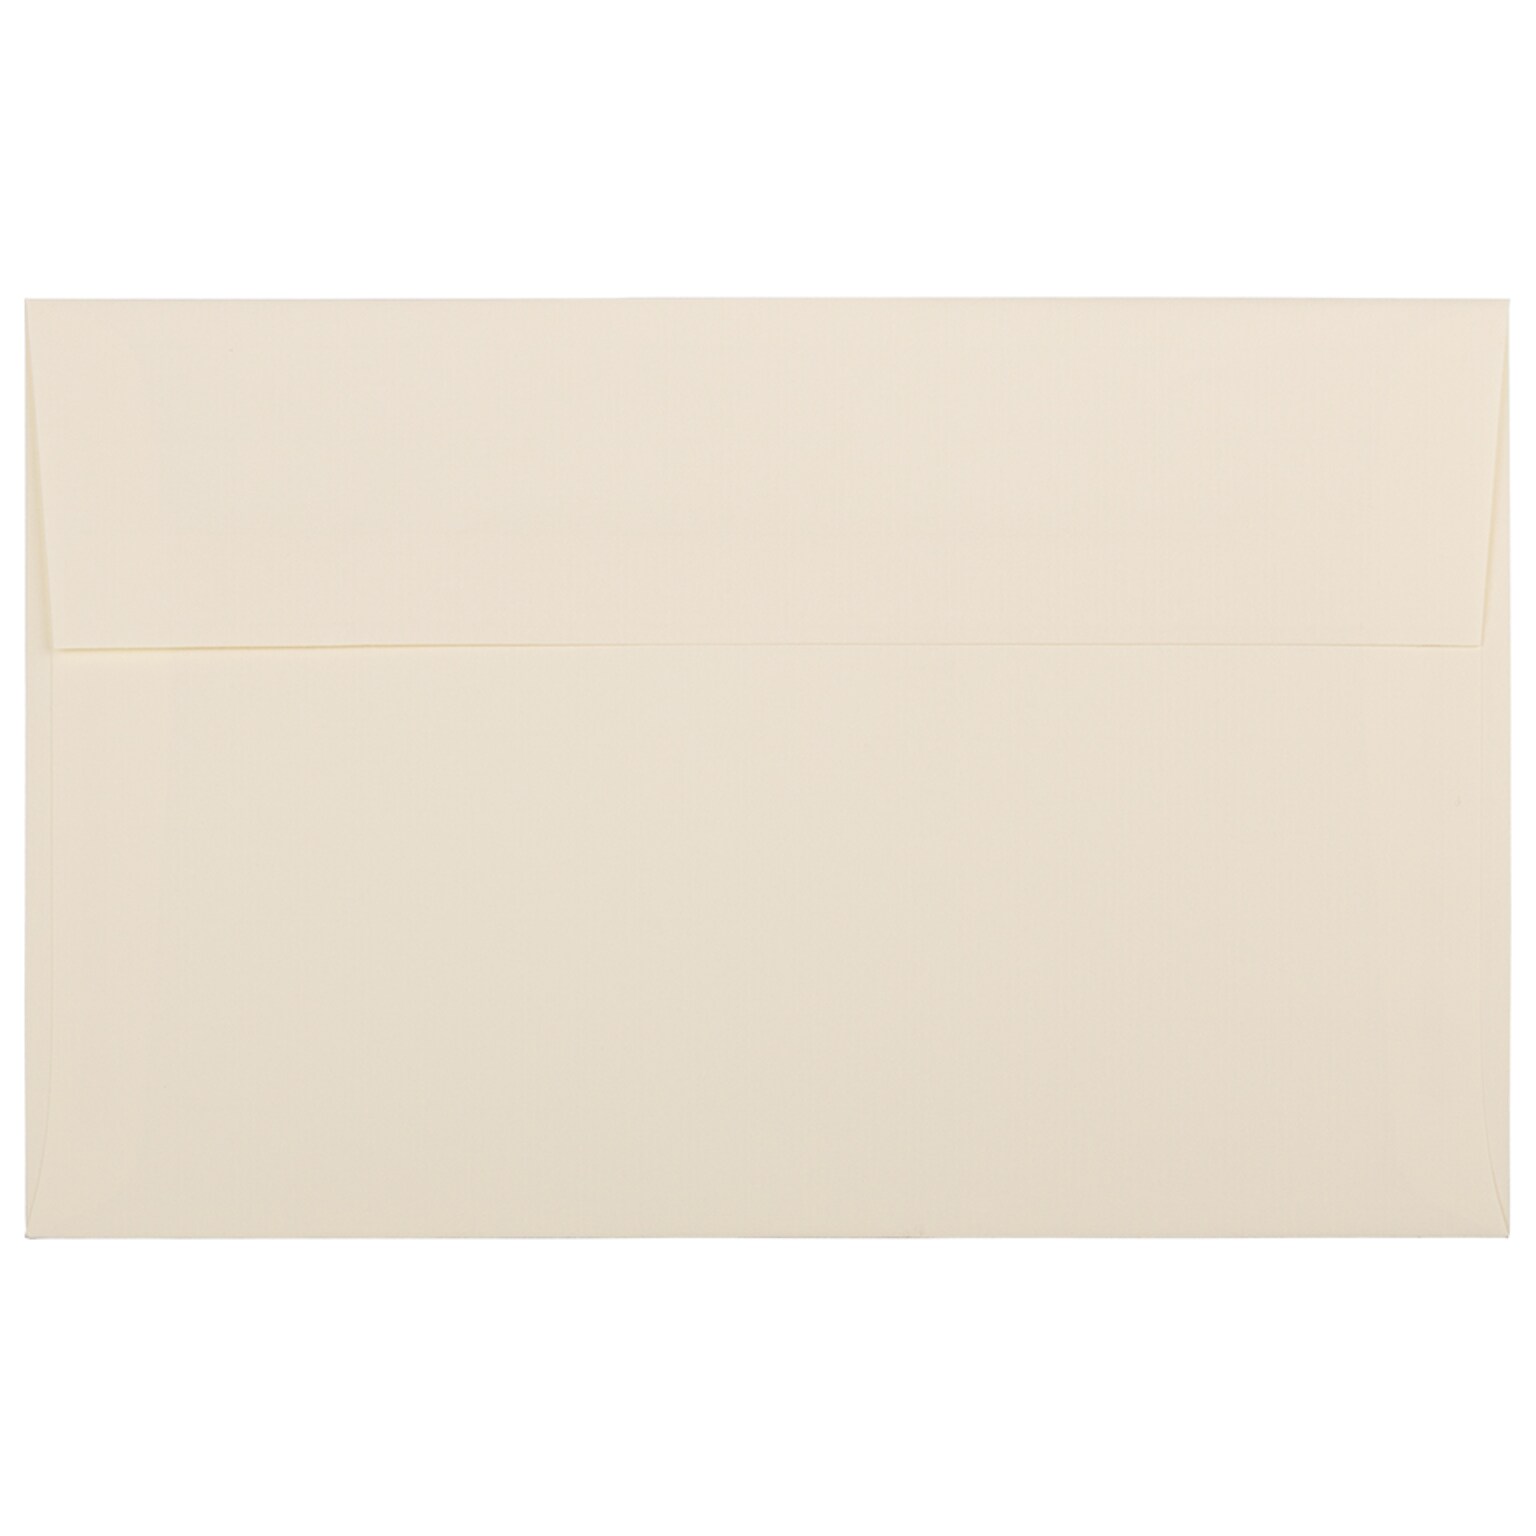 JAM Paper® A10 Strathmore Invitation Envelopes, 6 x 9.5, Ivory Laid, 25/Pack (191229)